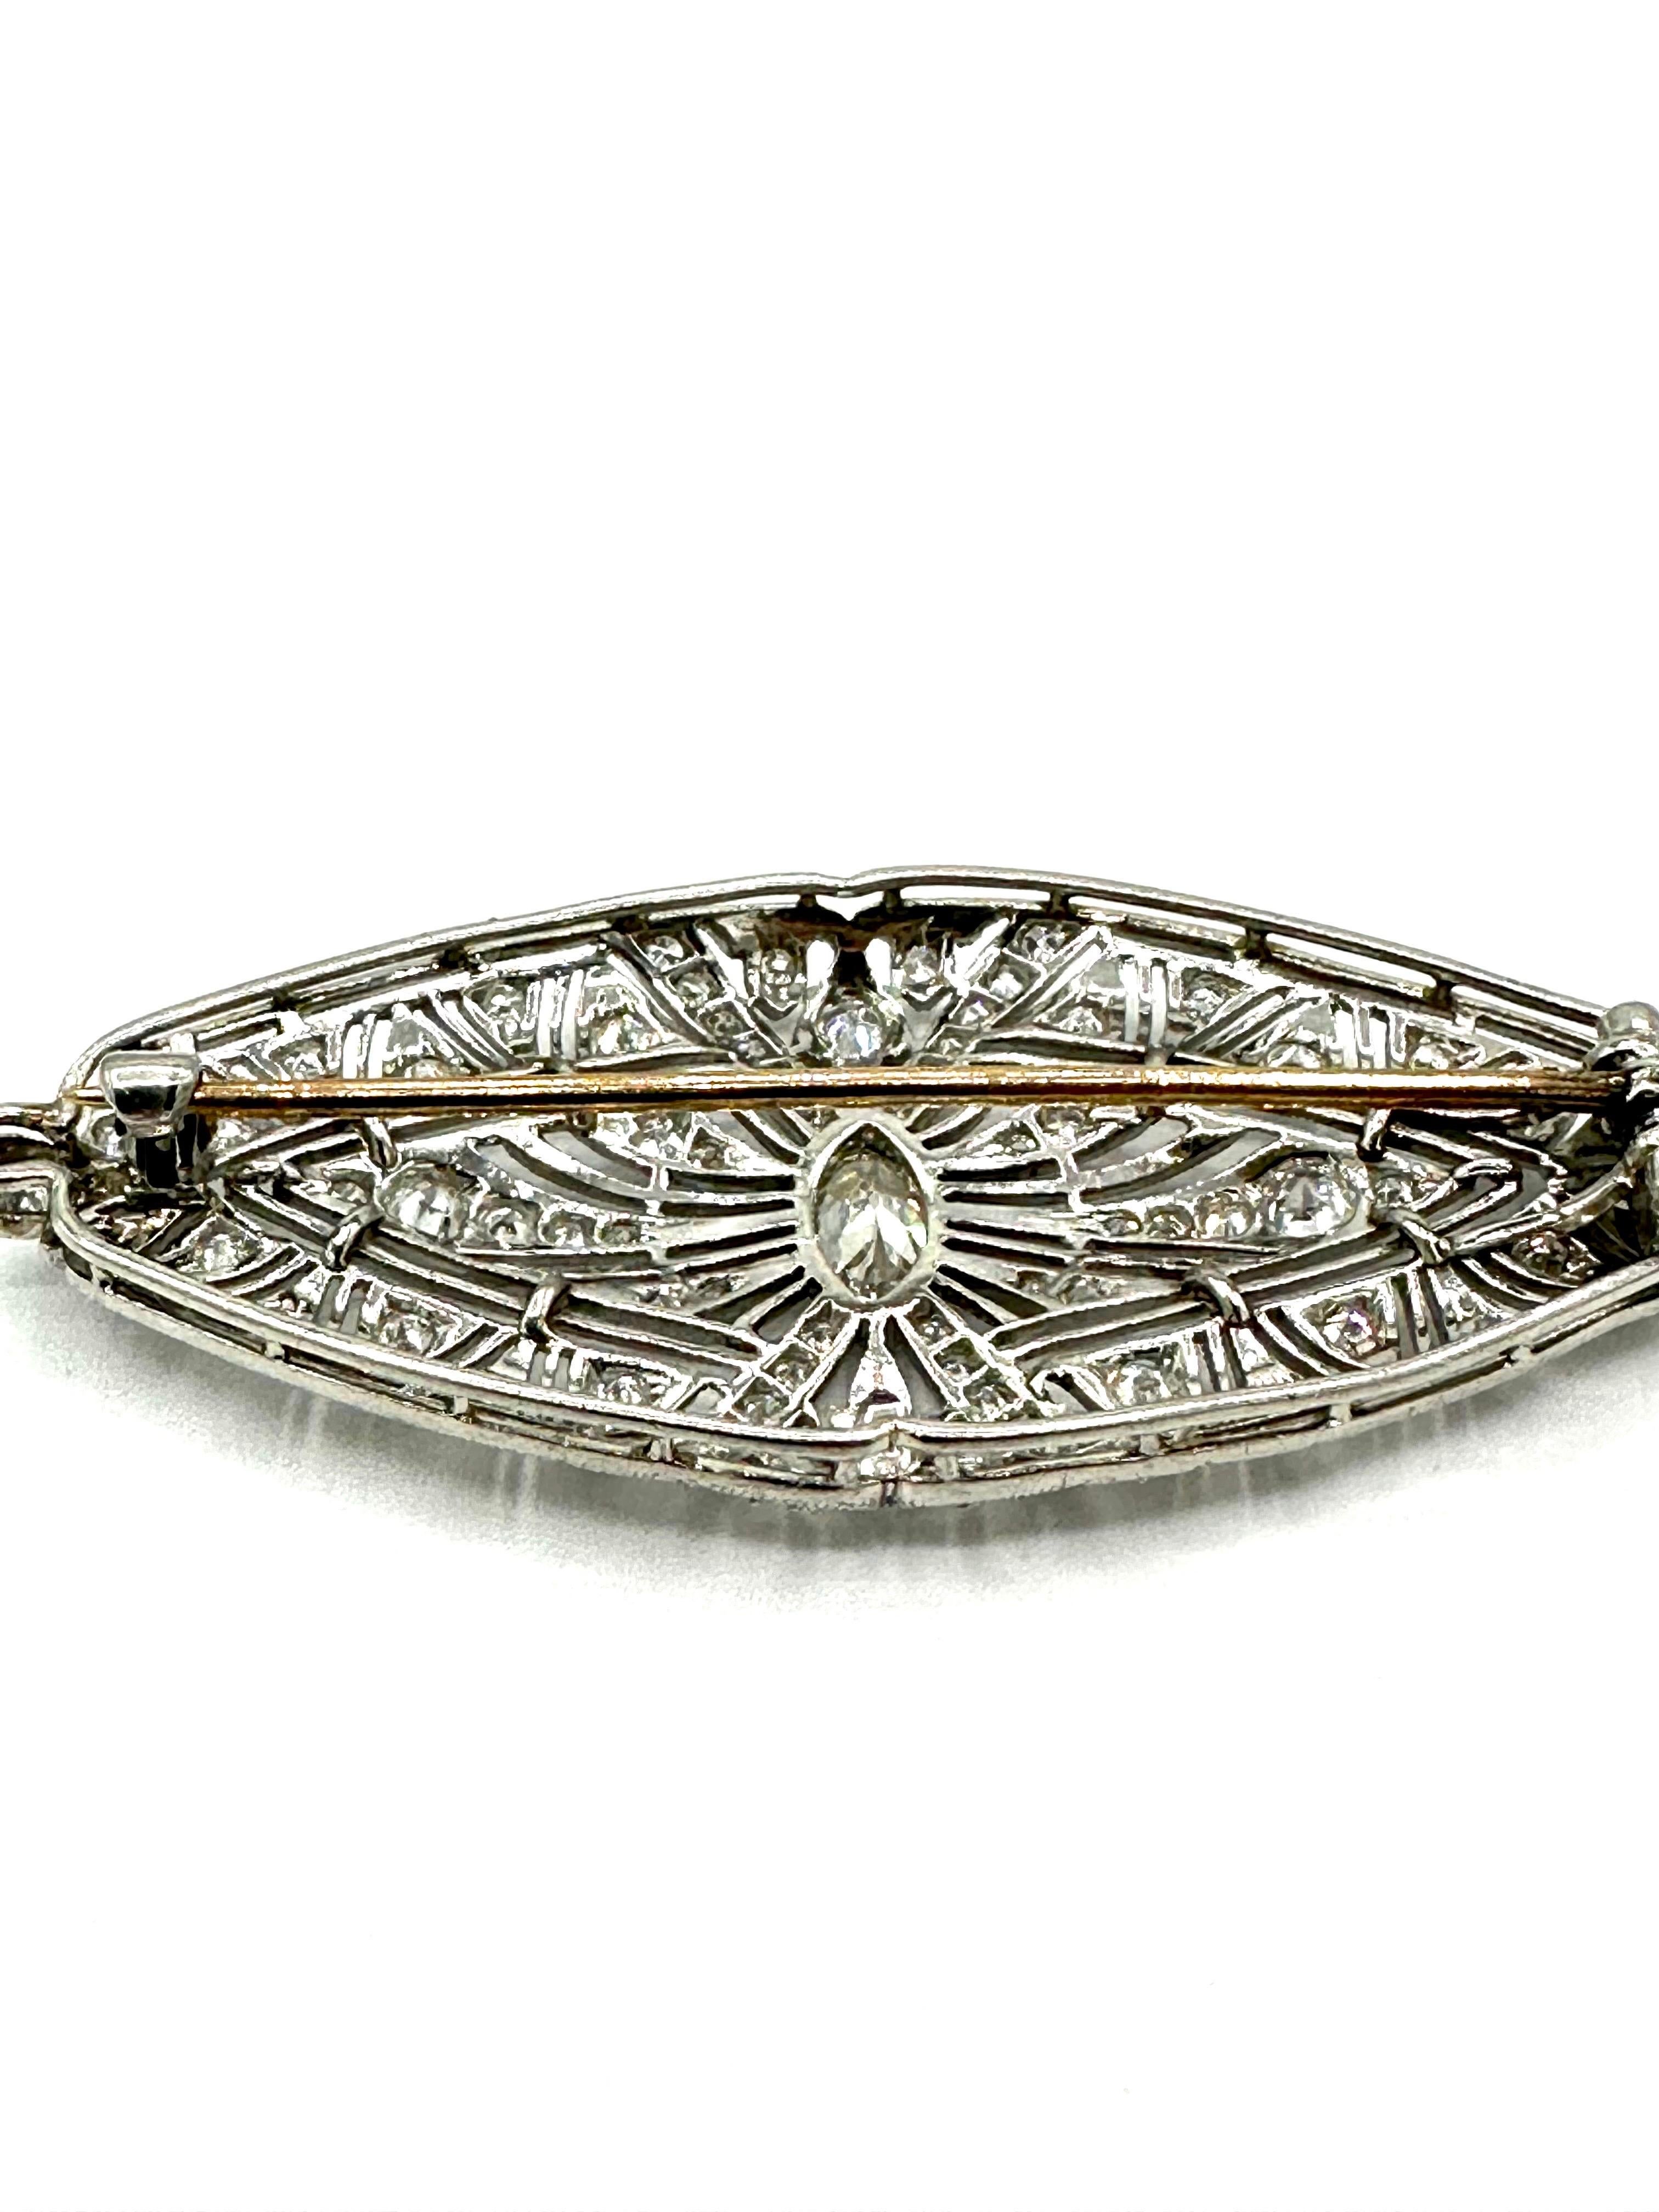 Art Deco 1.59 Carat Diamond Platinum Brooch For Sale 1